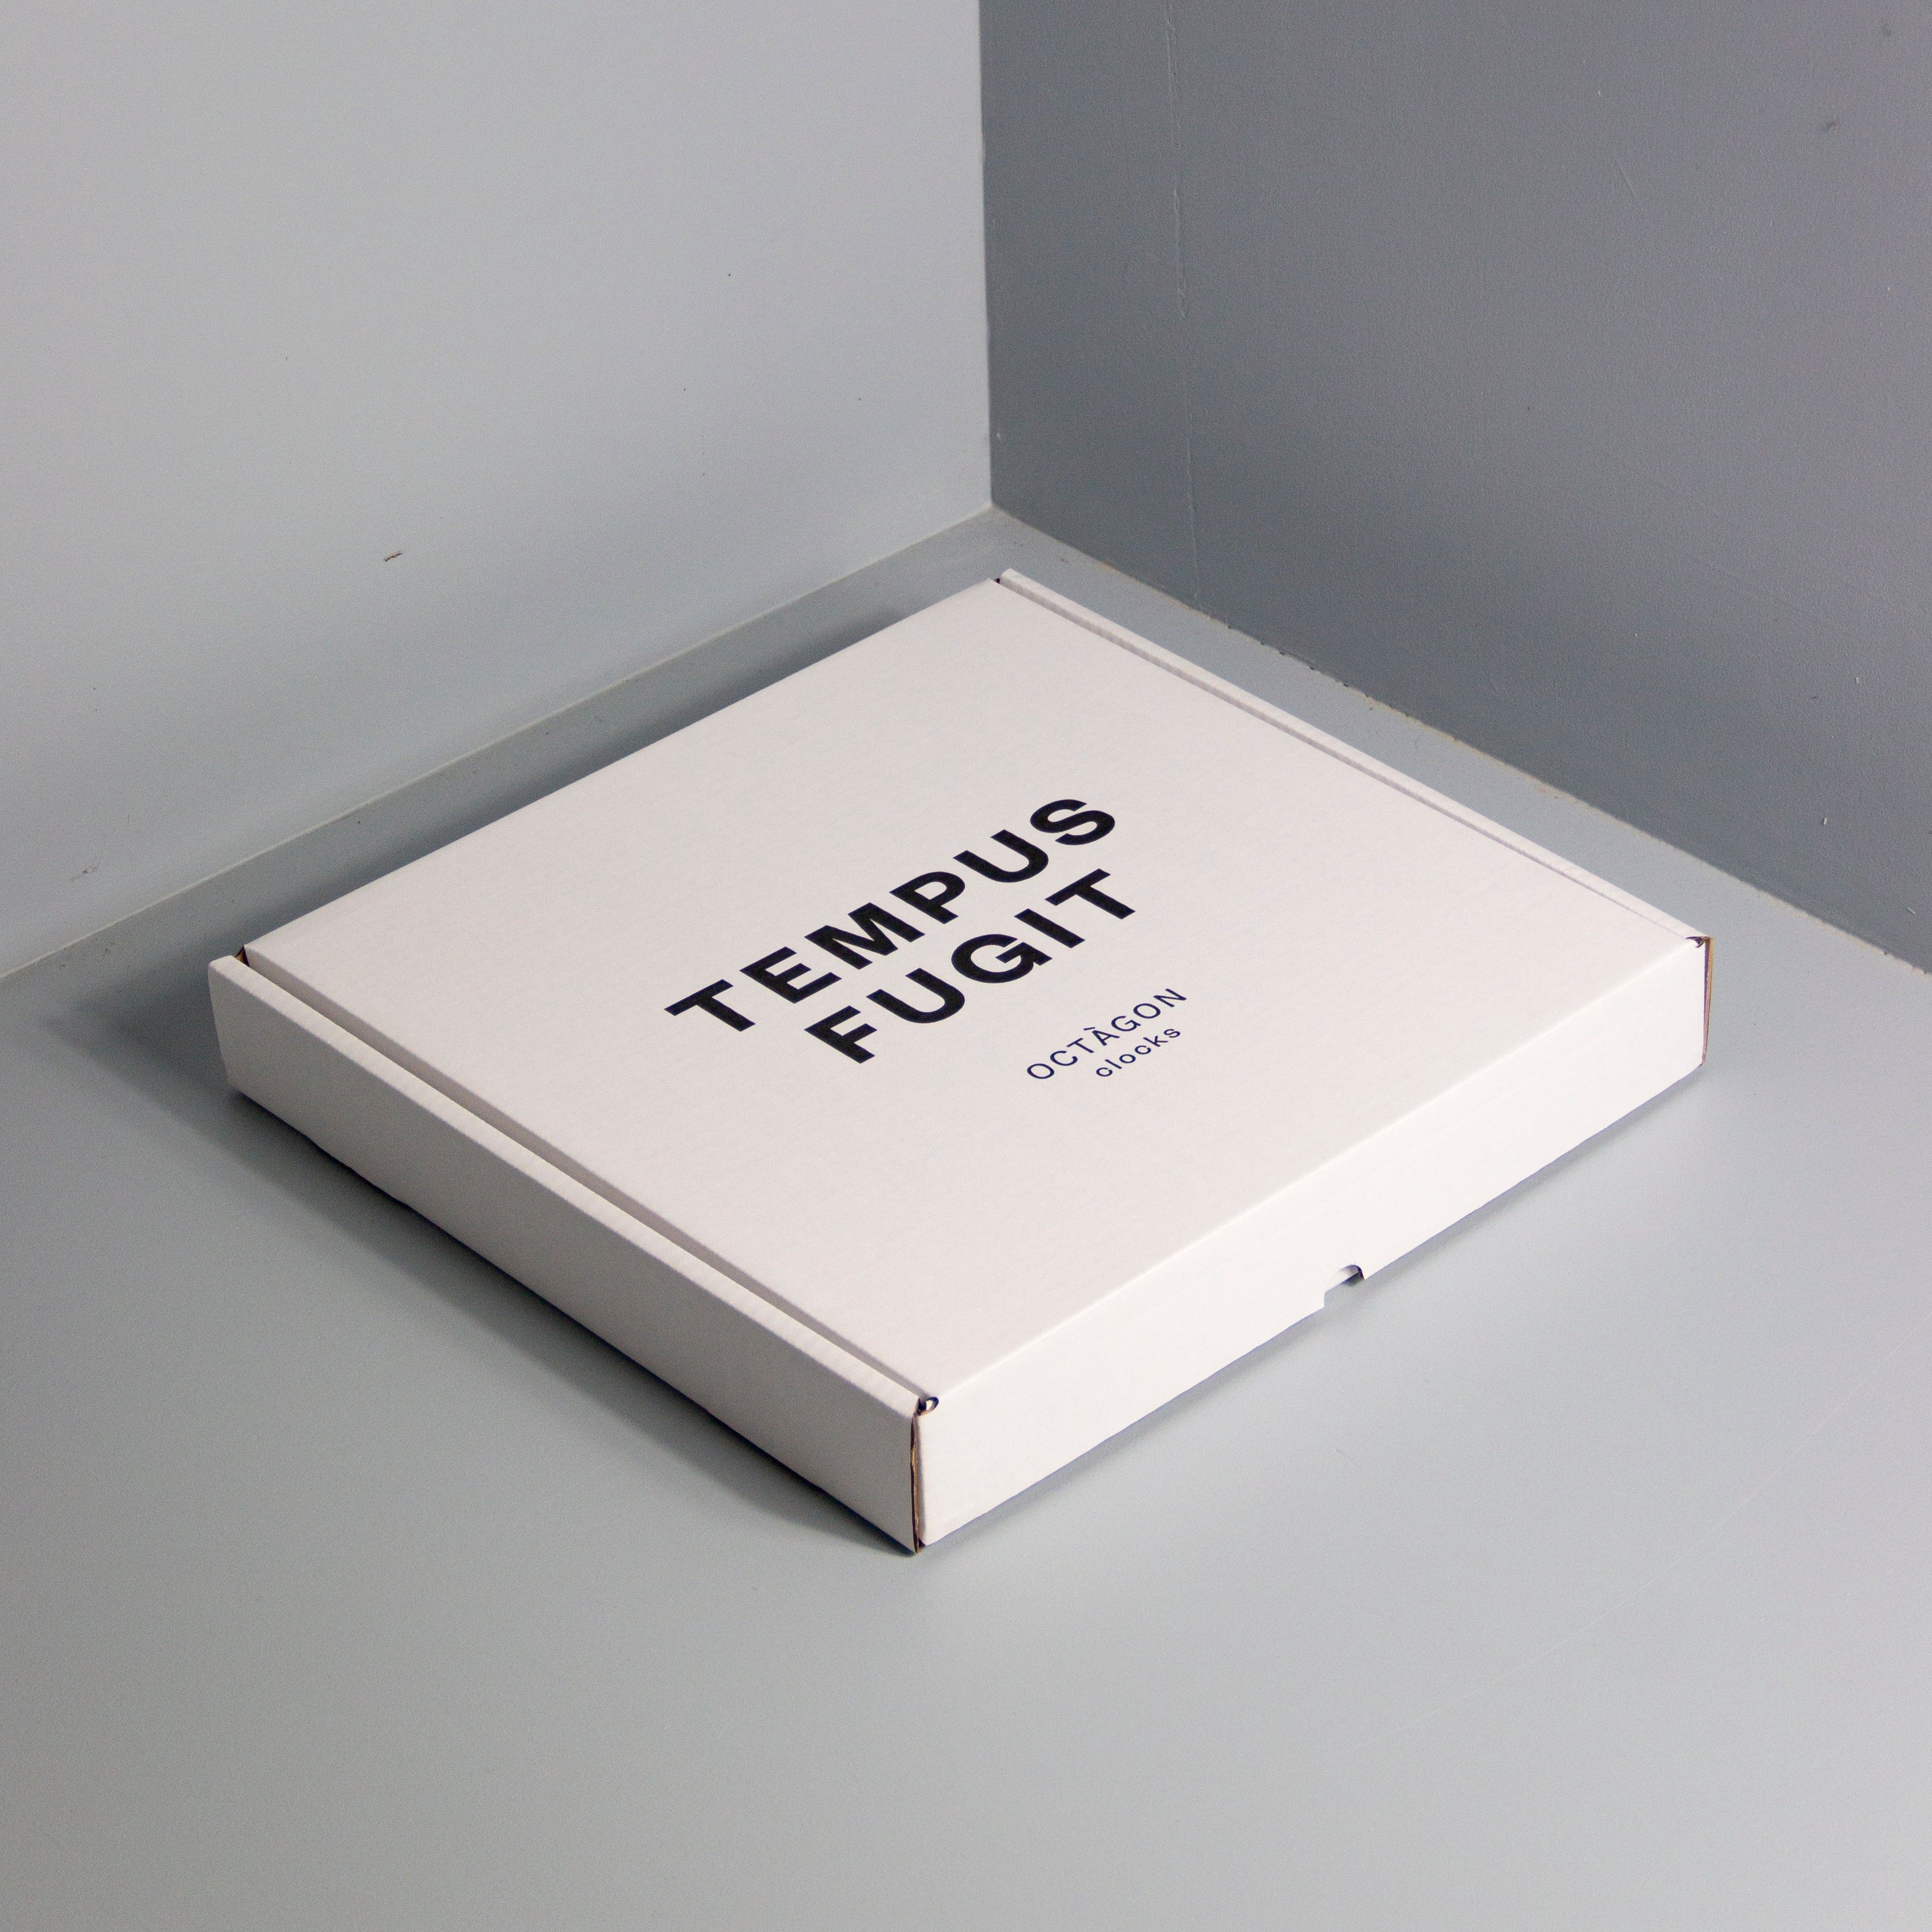 Box with "Tempus fugit" print leaning on a gray wall | Caja estampada "Tempus fugit" apoyada en una pared gris. | Caixa estampada "Tempus fugit" recolzada en una paret gris.